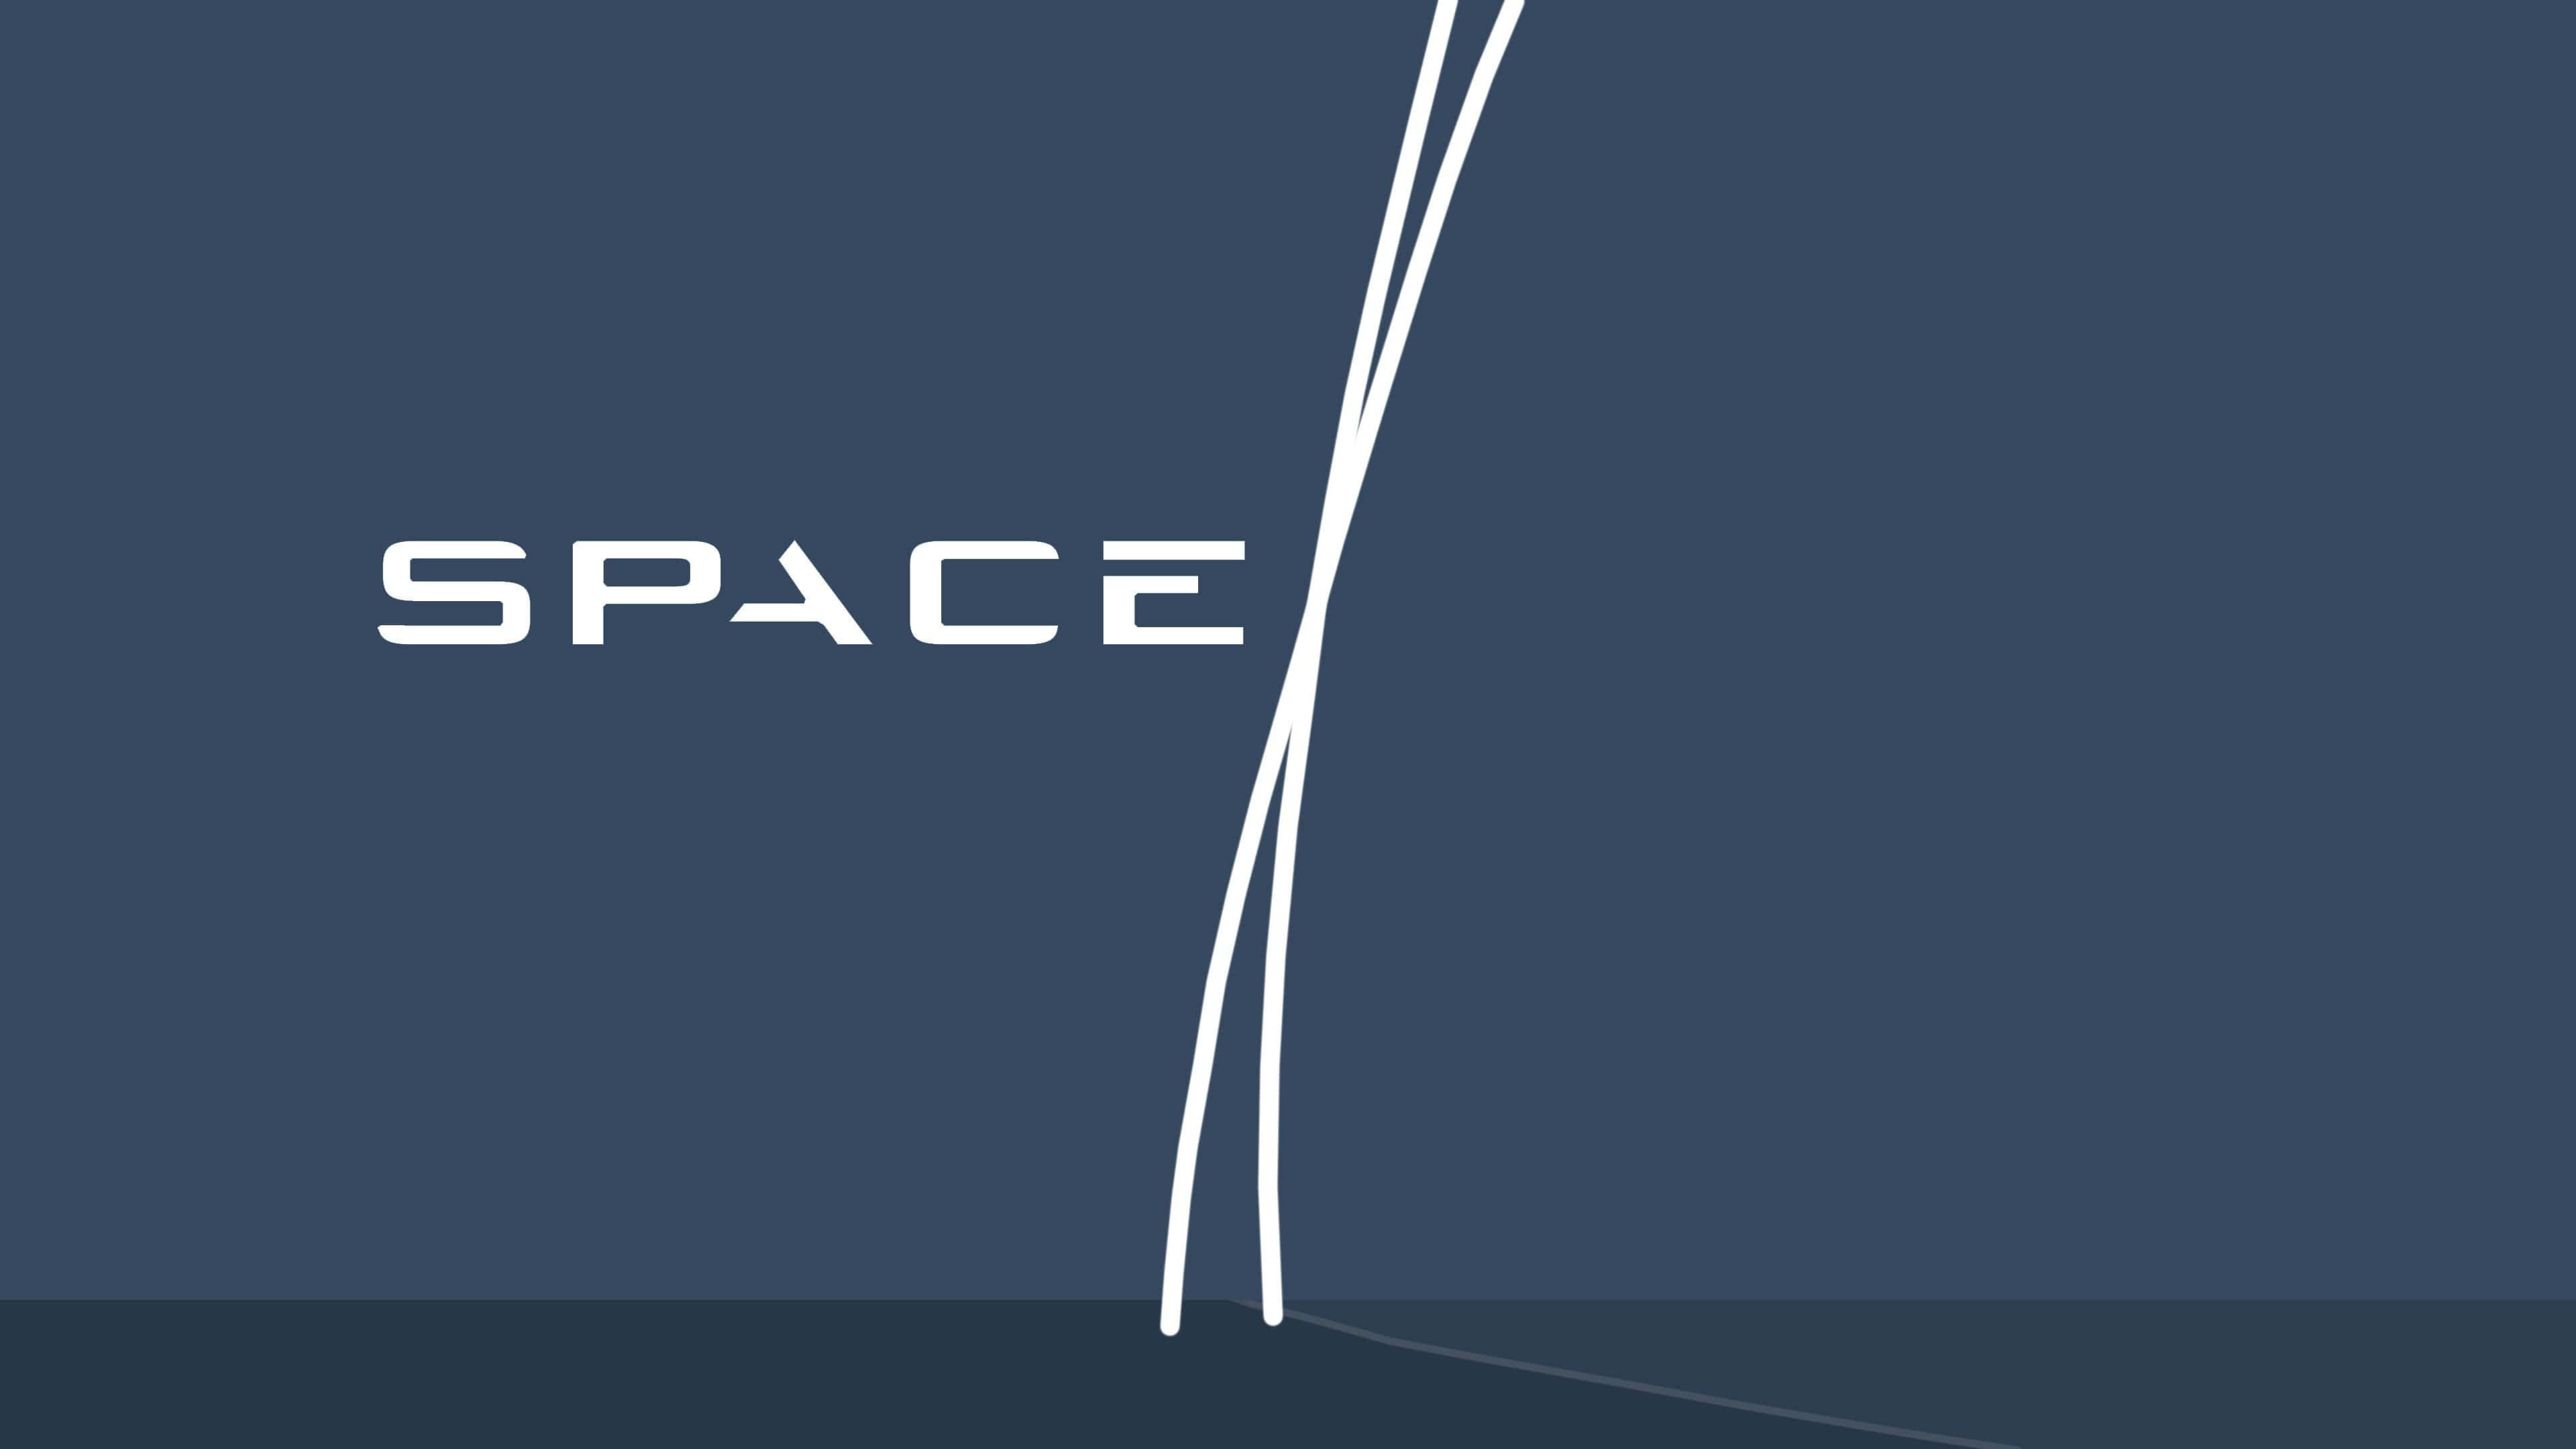 SpaceX X Logo - SpaceX Logo UHD 4K Wallpaper | Pixelz